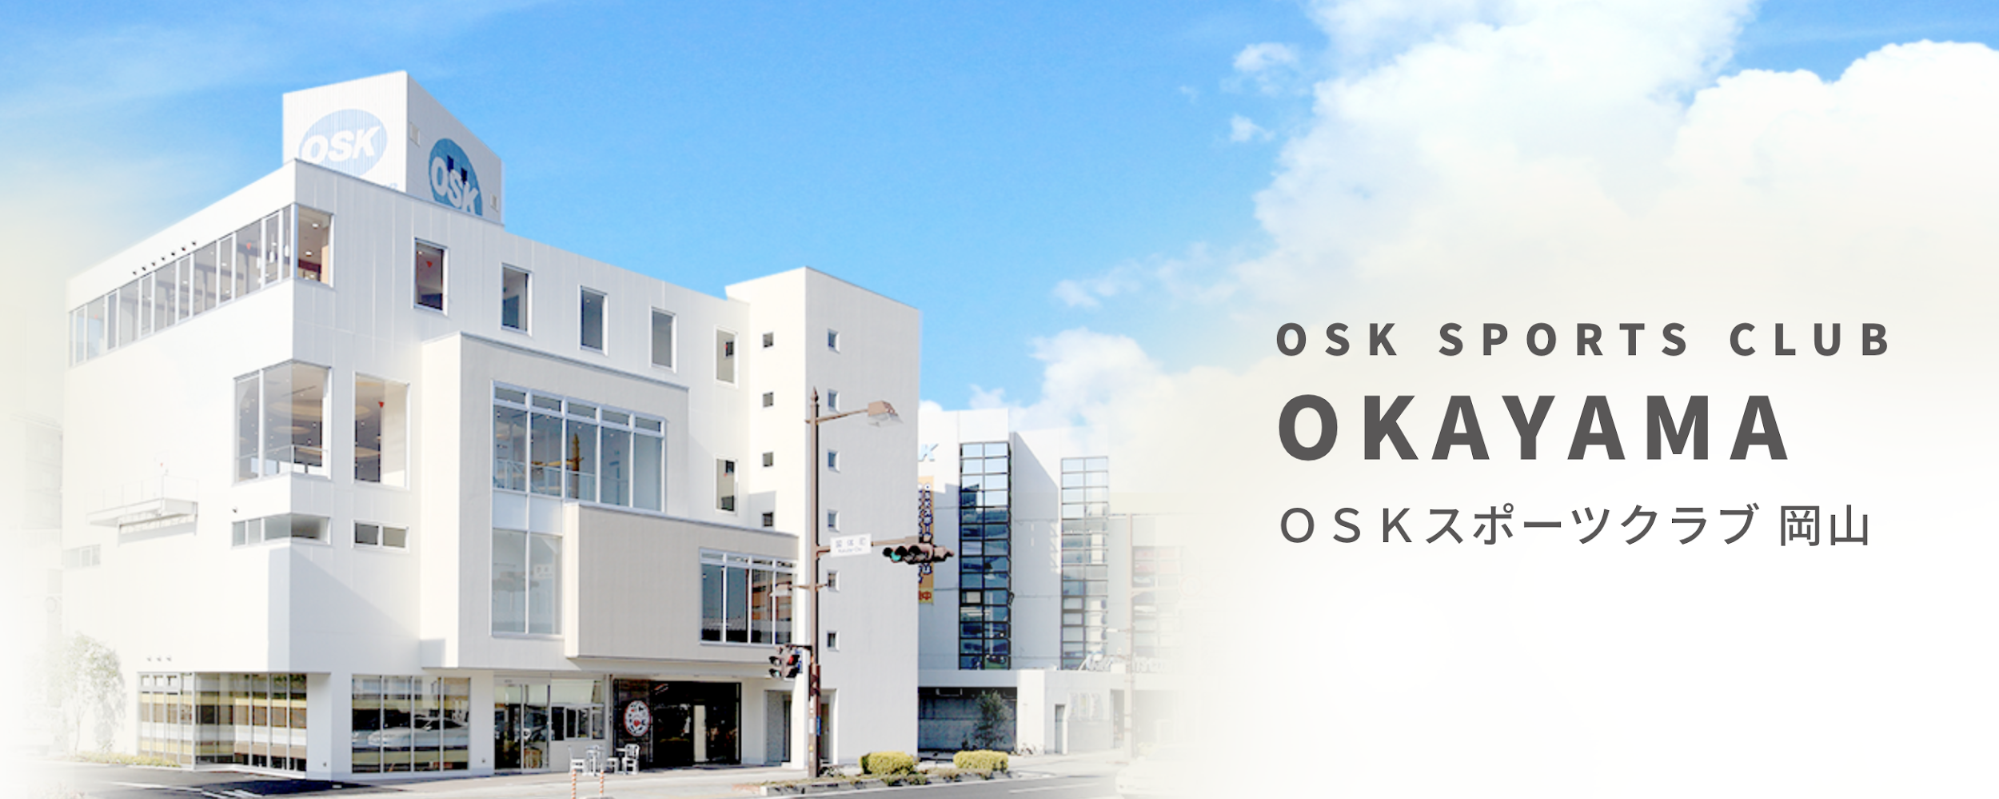 OSK SPORTS CLUB岡山